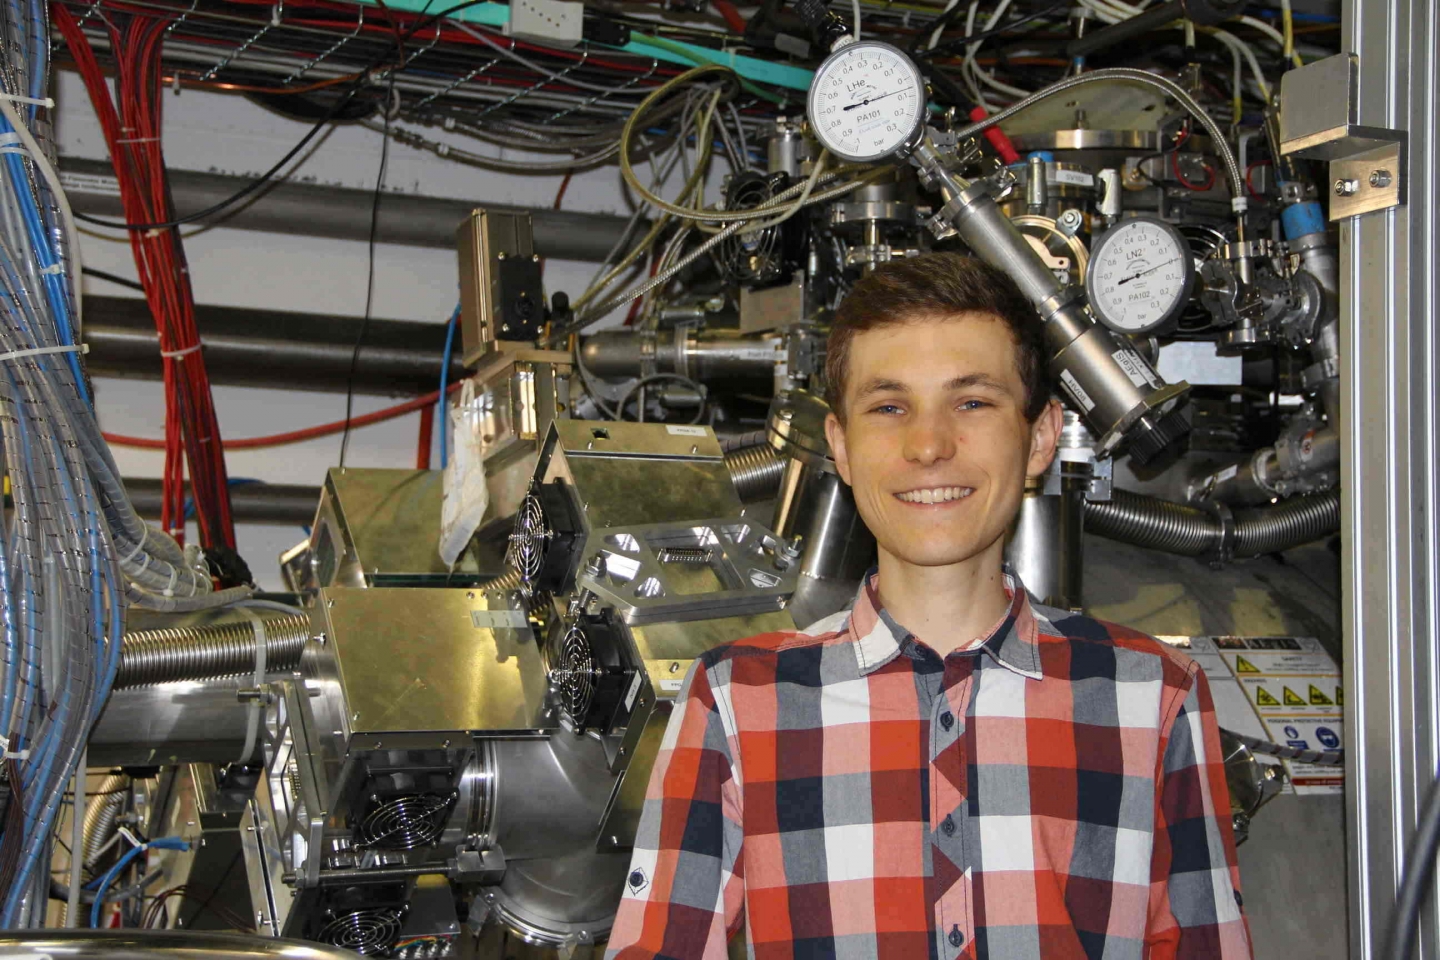 The hundredth Gentner Doctoral Student has started at CERN